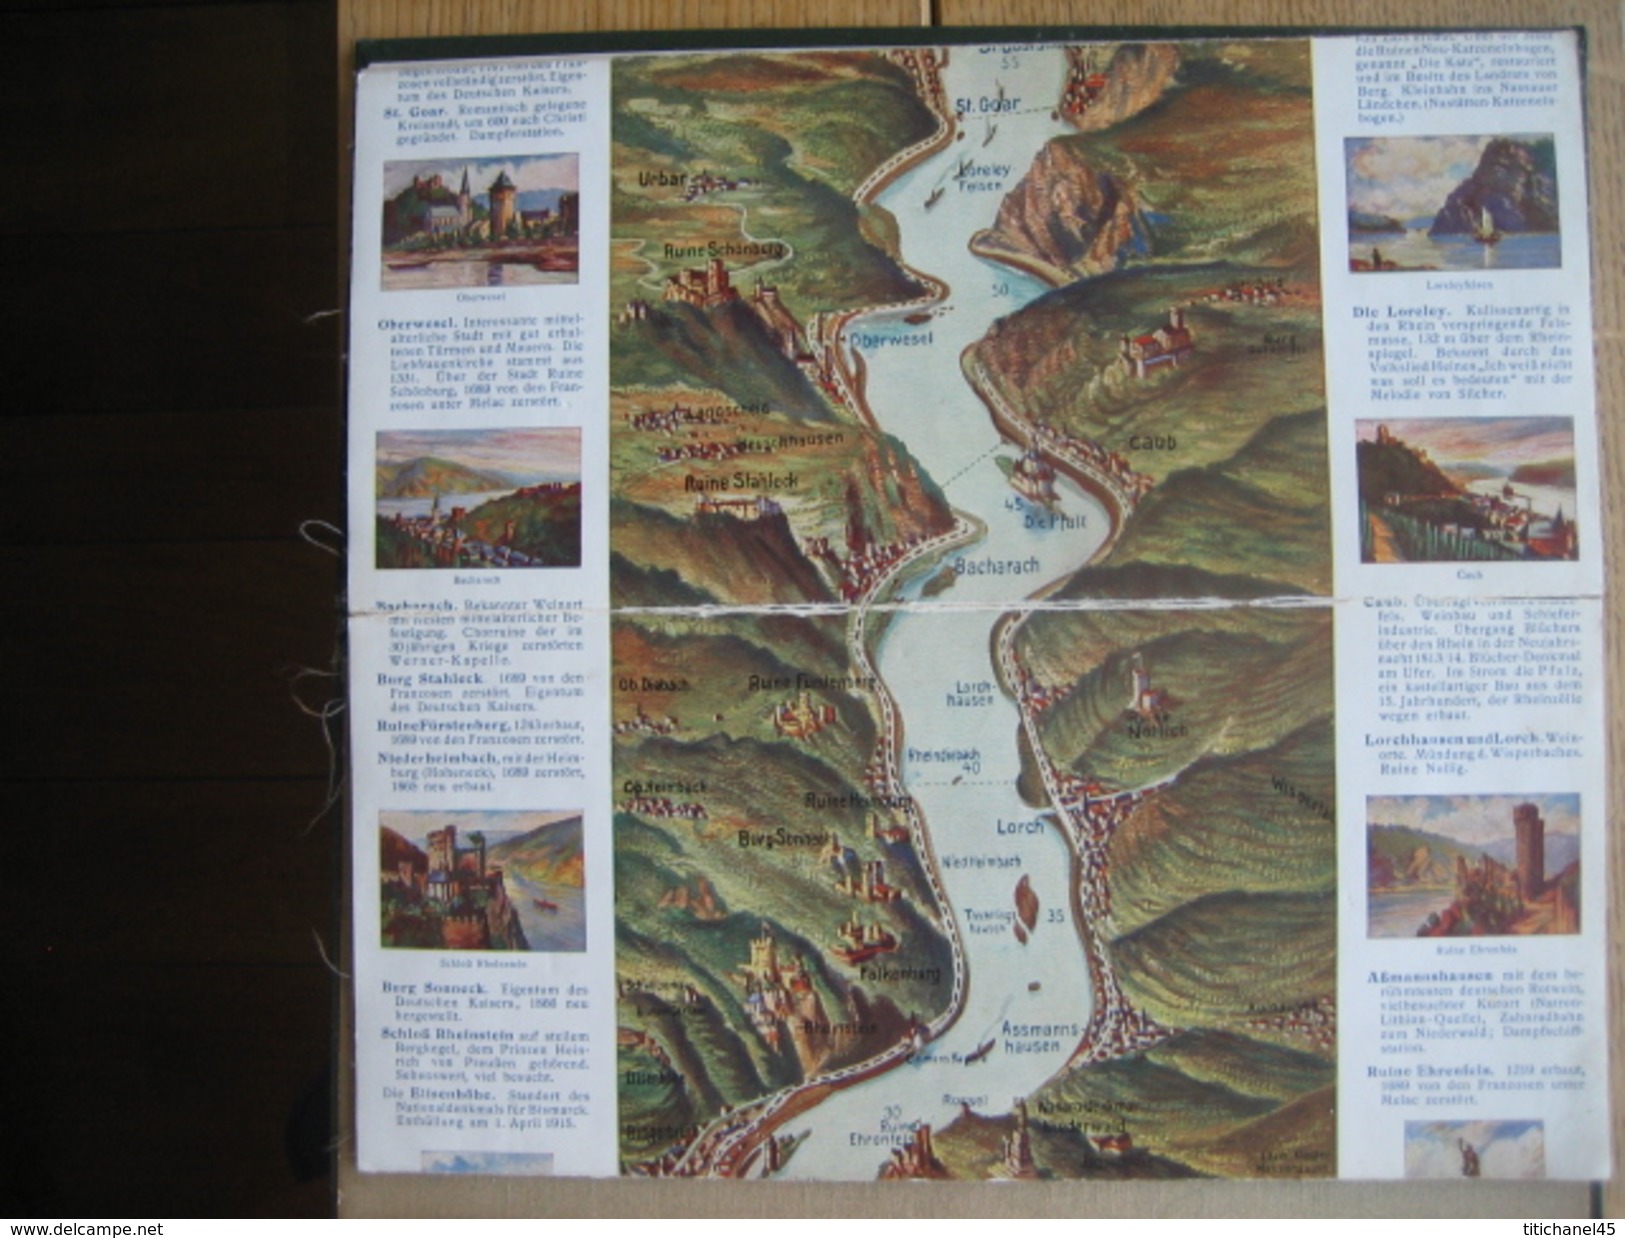 RHEINLAUF VON MAINZ BIS KÖLN - Geographische Karte auf Leinwand (186 x 28 cm) - Verlag von Karl RUD. Bremer, Köln - 1910